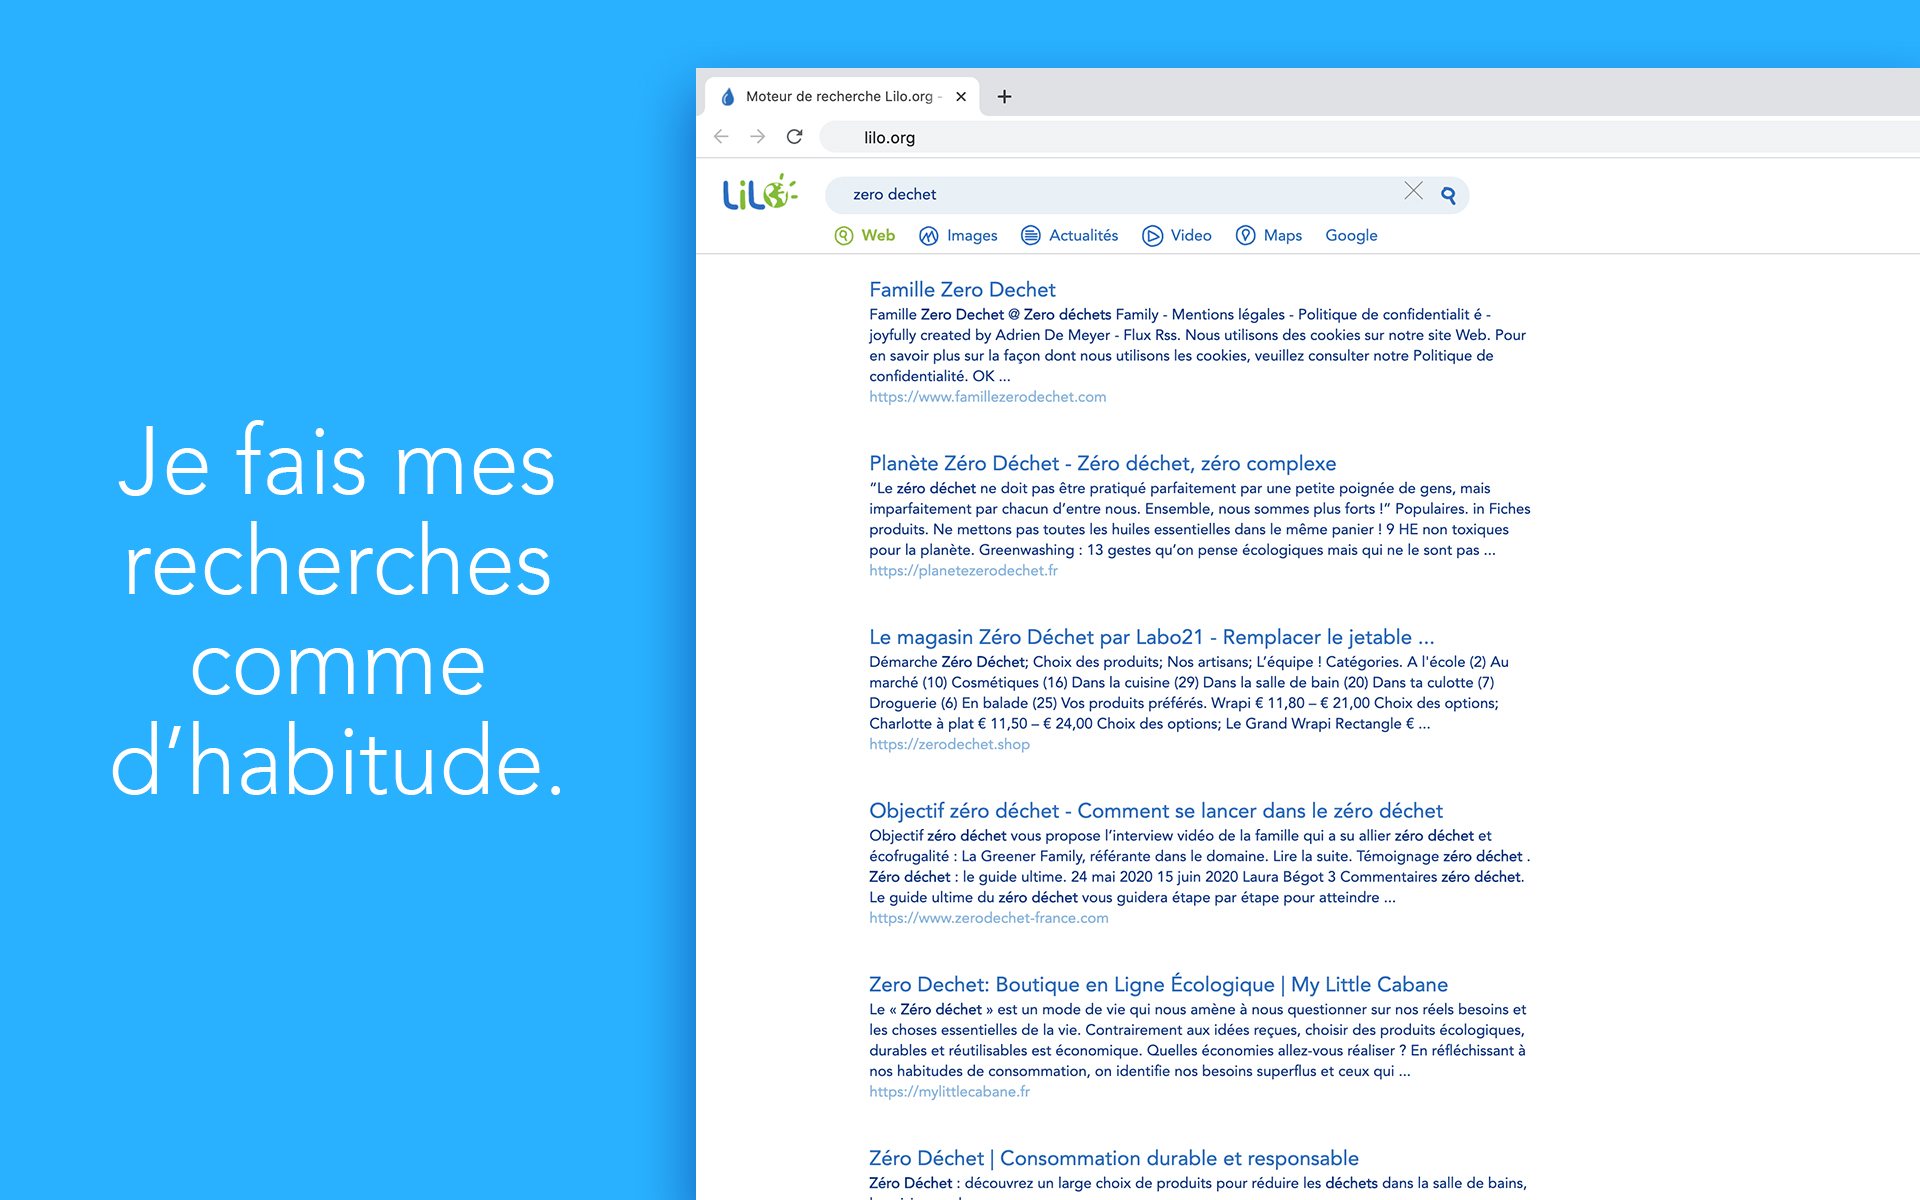 Lilo - Search engine